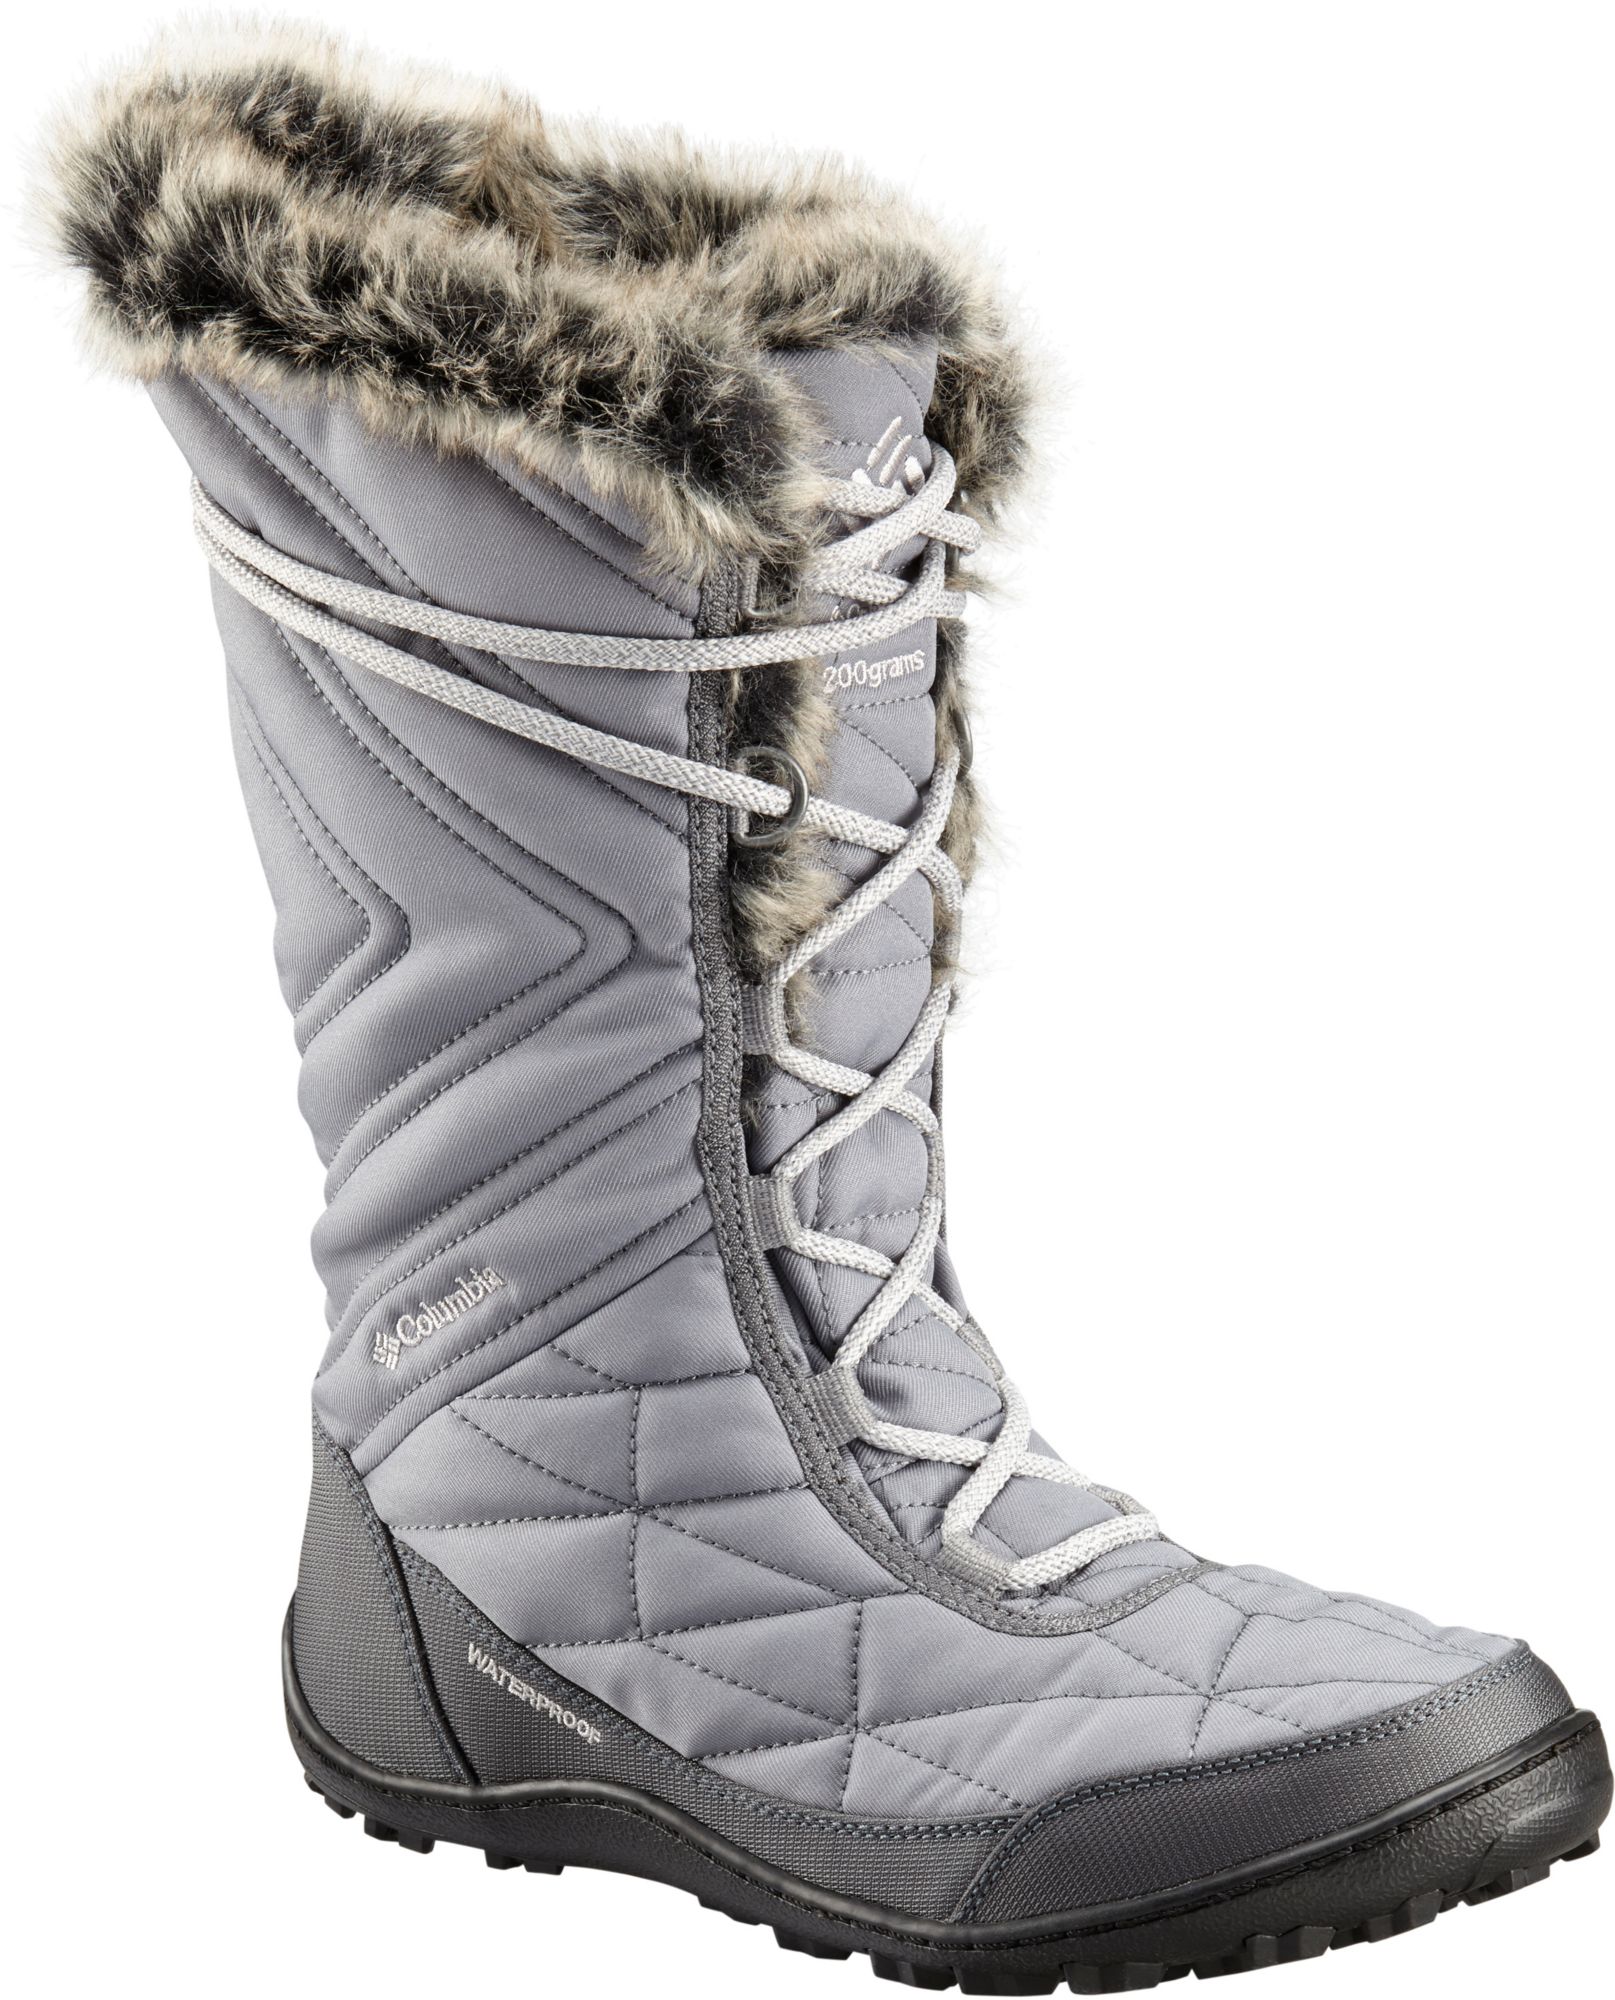 Columbia Women's Minx Mid III 200g Winter Boots | Publiclands